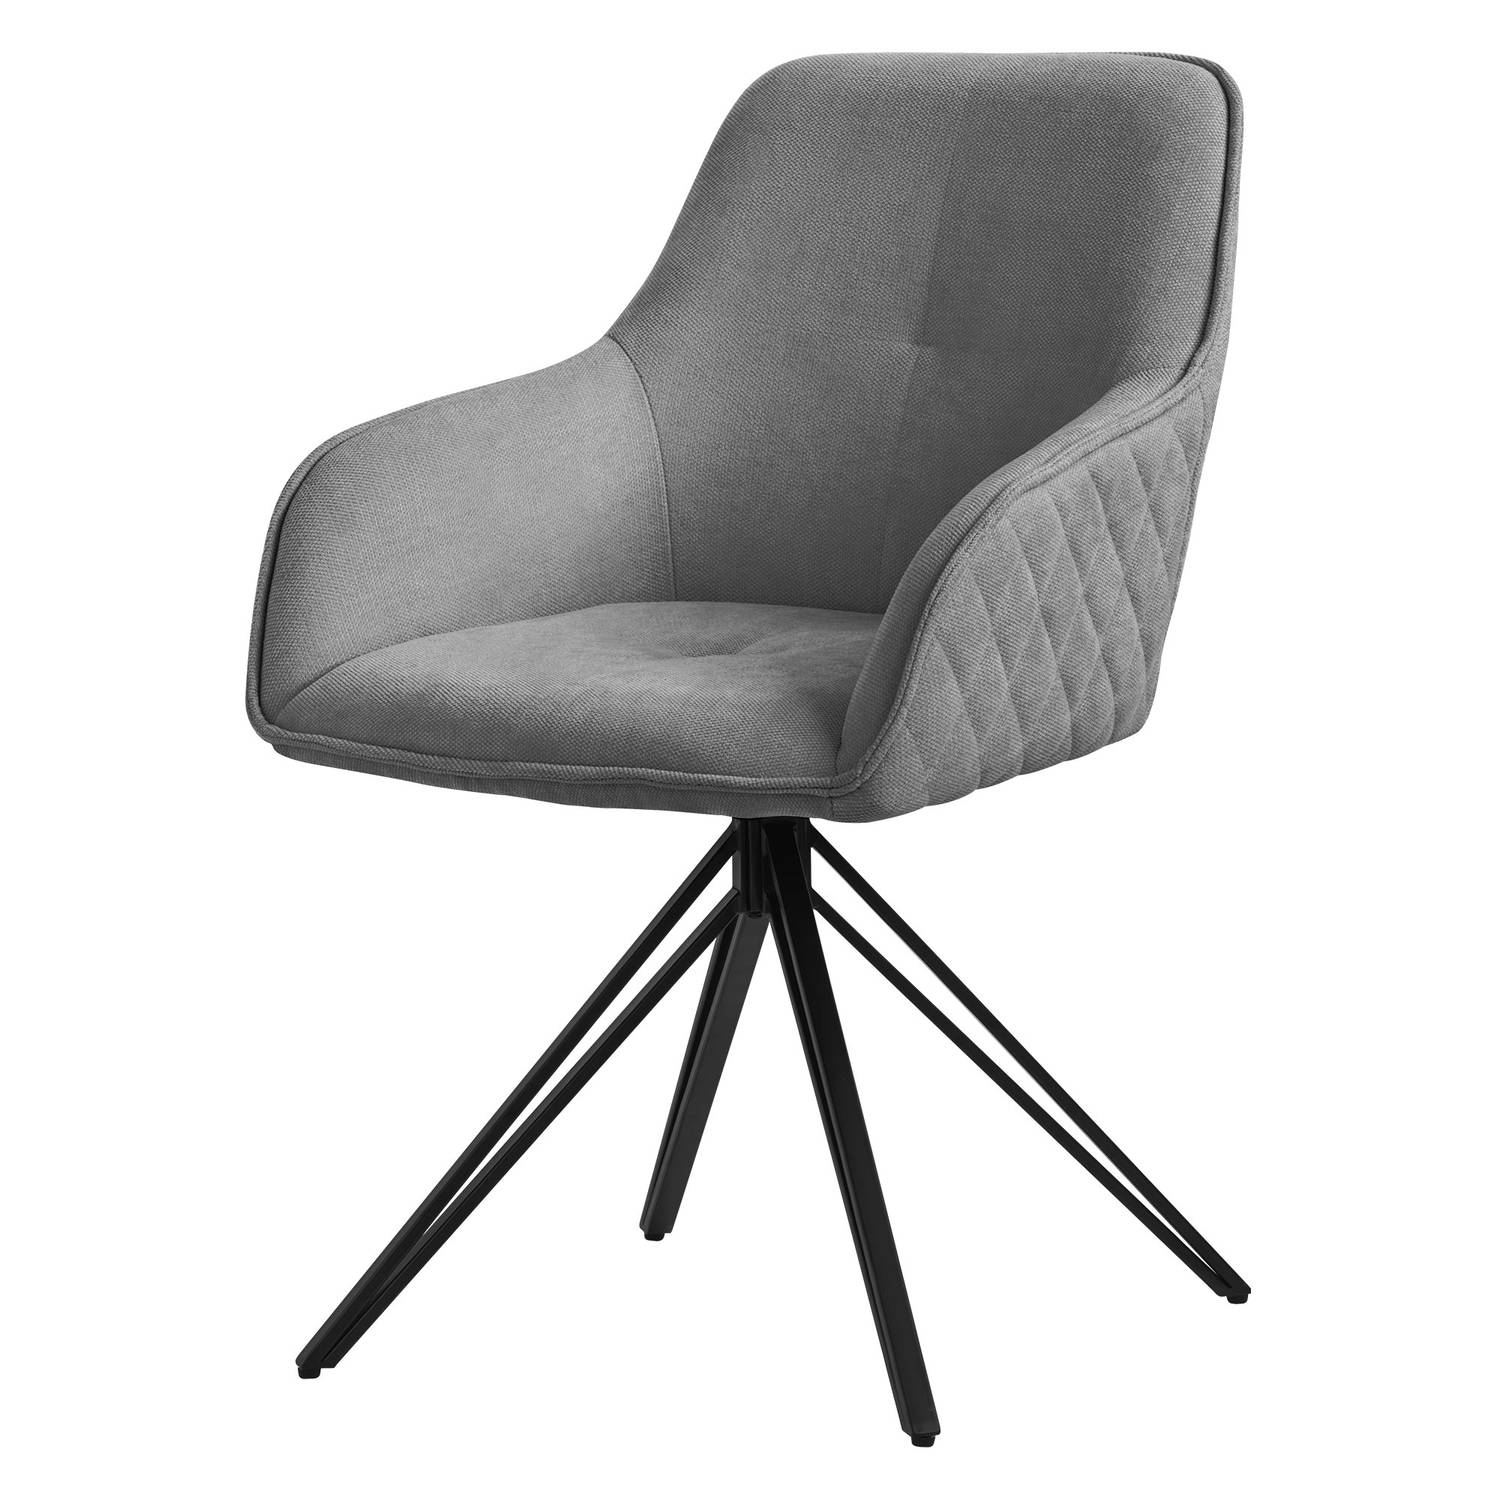 ML-Design eetkamerstoel draaibaar van textiel geweven stof, grijs, woonkamerstoel met armleuning & rugleuning, 360° draaibare stoel, gestoffeerde stoel met metalen poten, keukensto